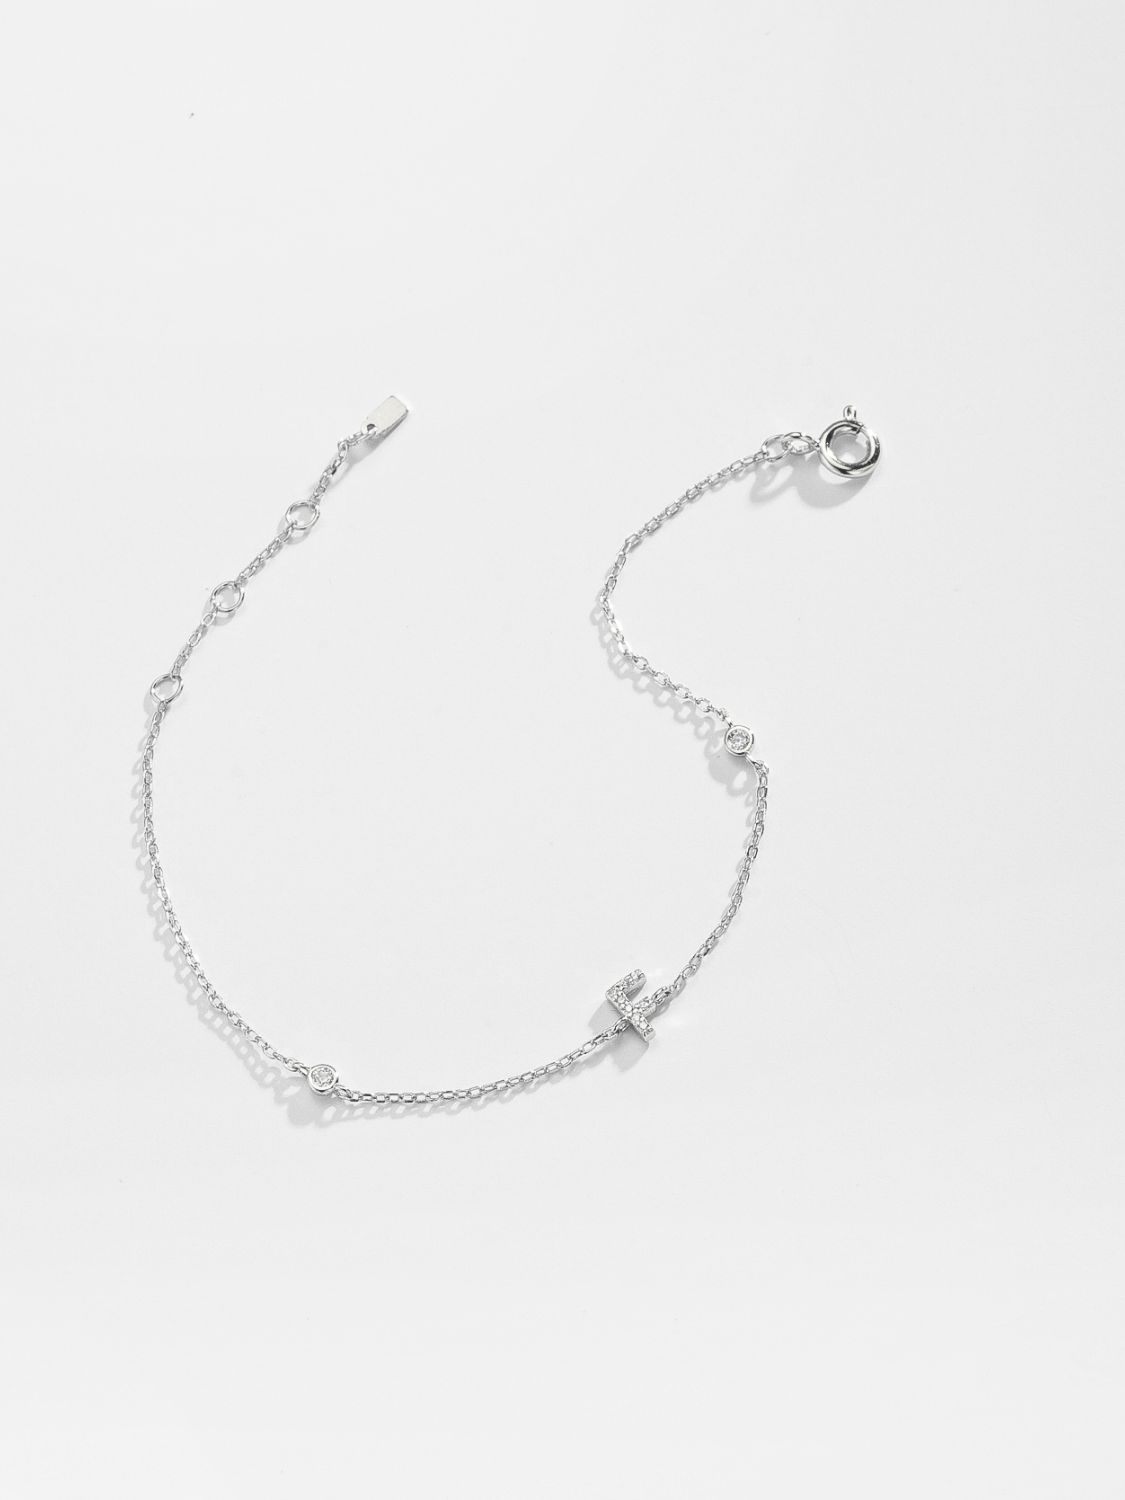 A To F Zircon 925 Sterling Silver Bracelet - Women’s Jewelry - Bracelets - 35 - 2024